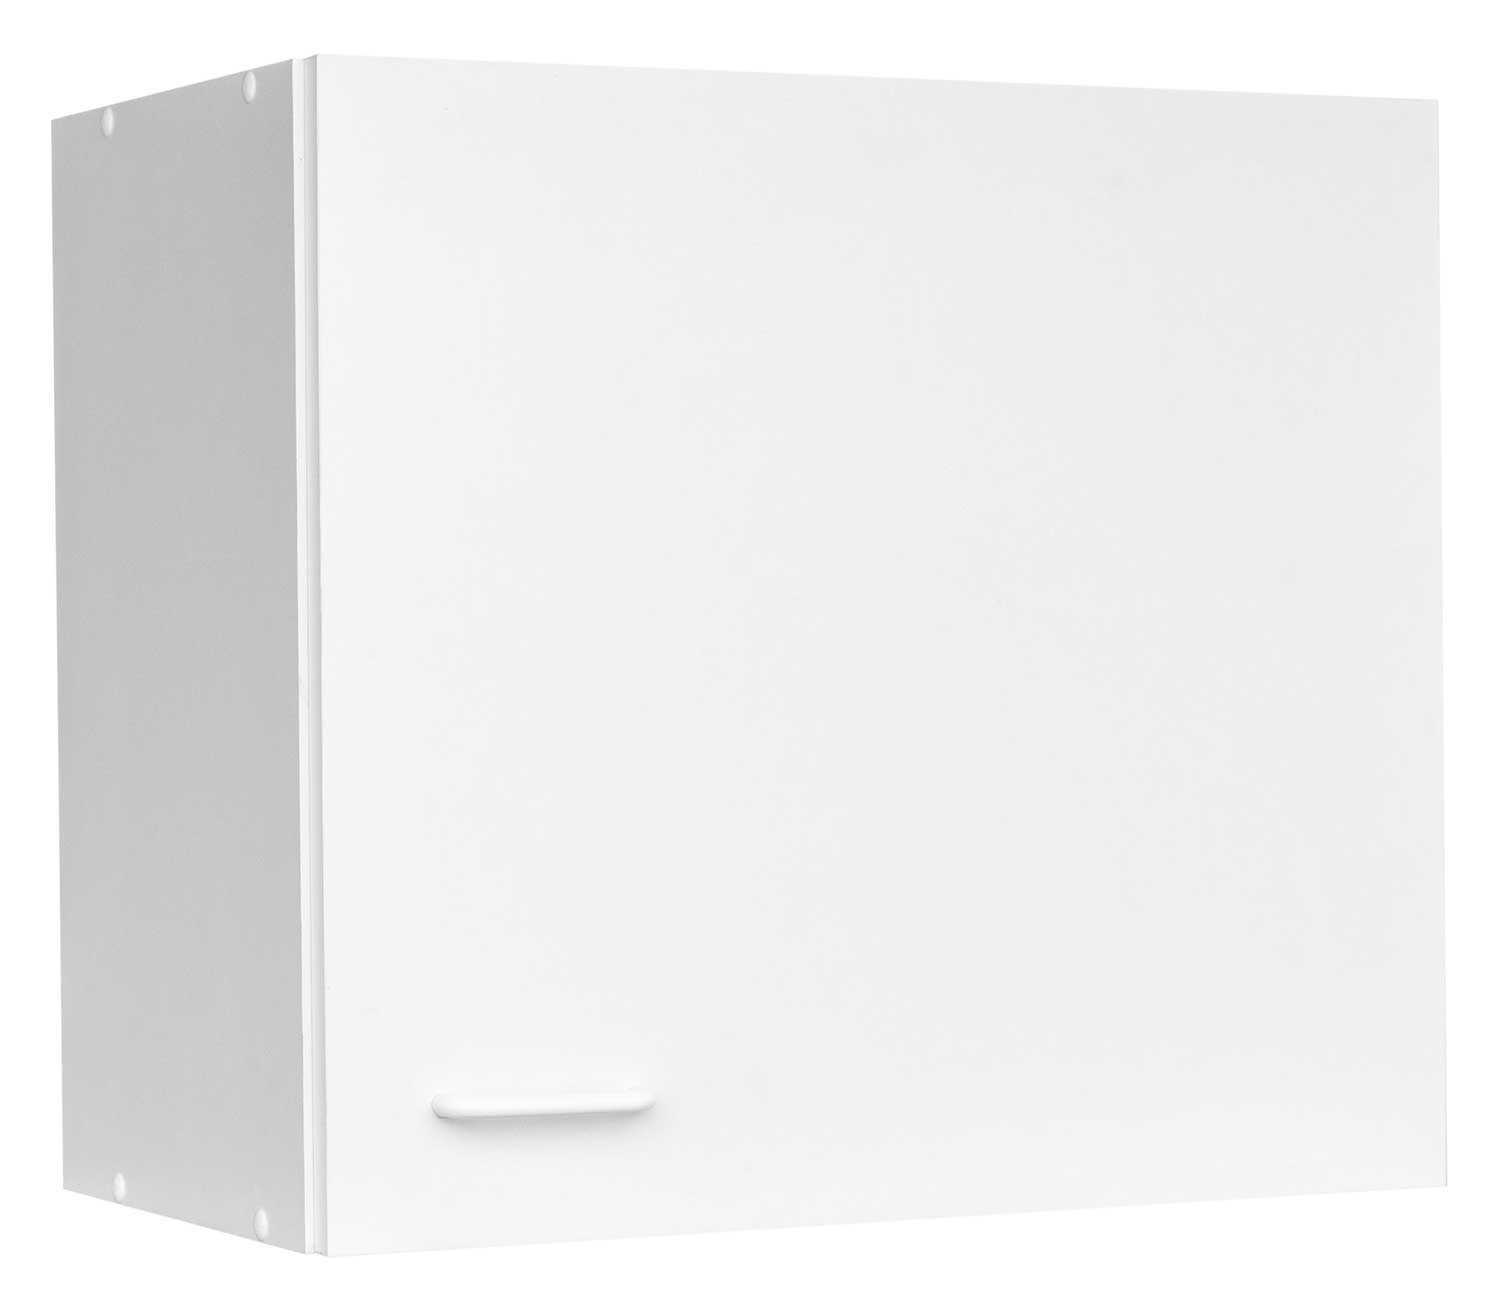 Hängeschrank Küchenschrank TOP, Weiß matt, 1 Tür, B 60 cm, H 53 cm, Boden 5-fach höhenverstellbar